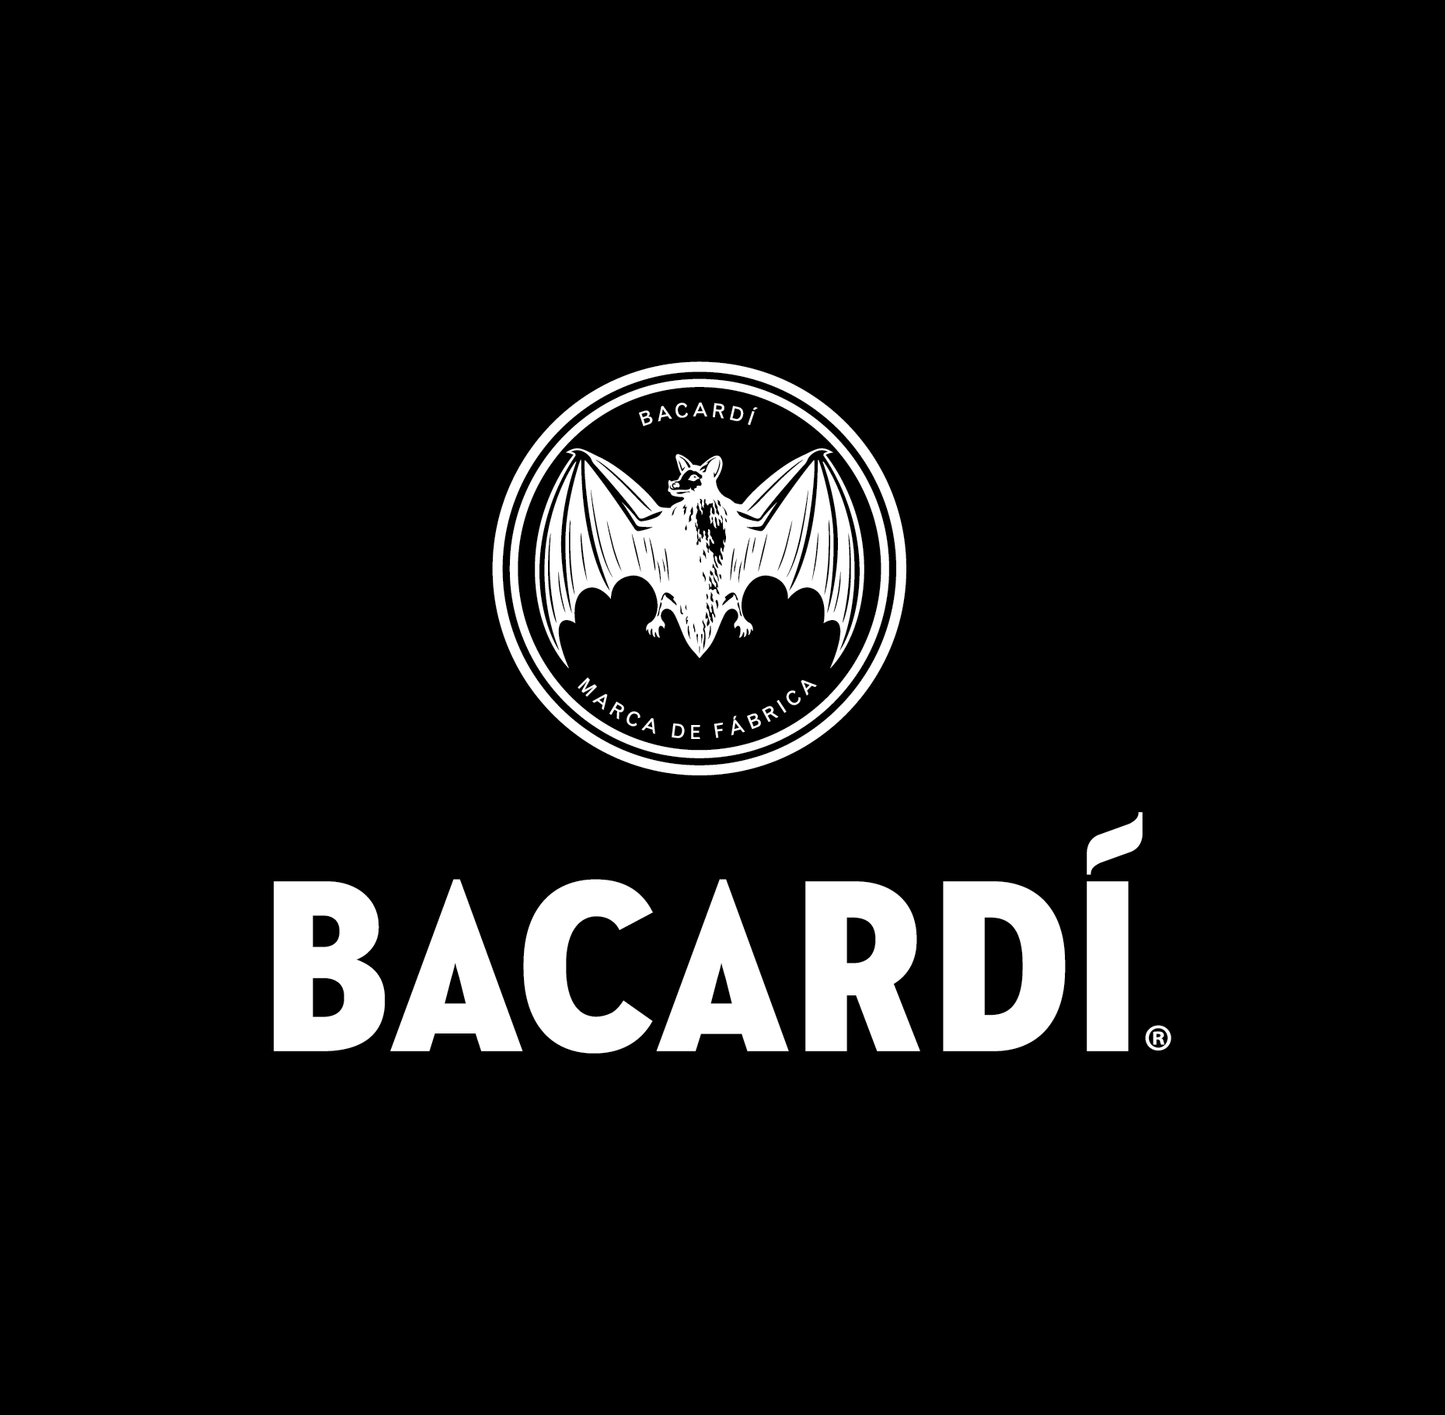 Bacardi - Primary Logo - Simplified - B&W